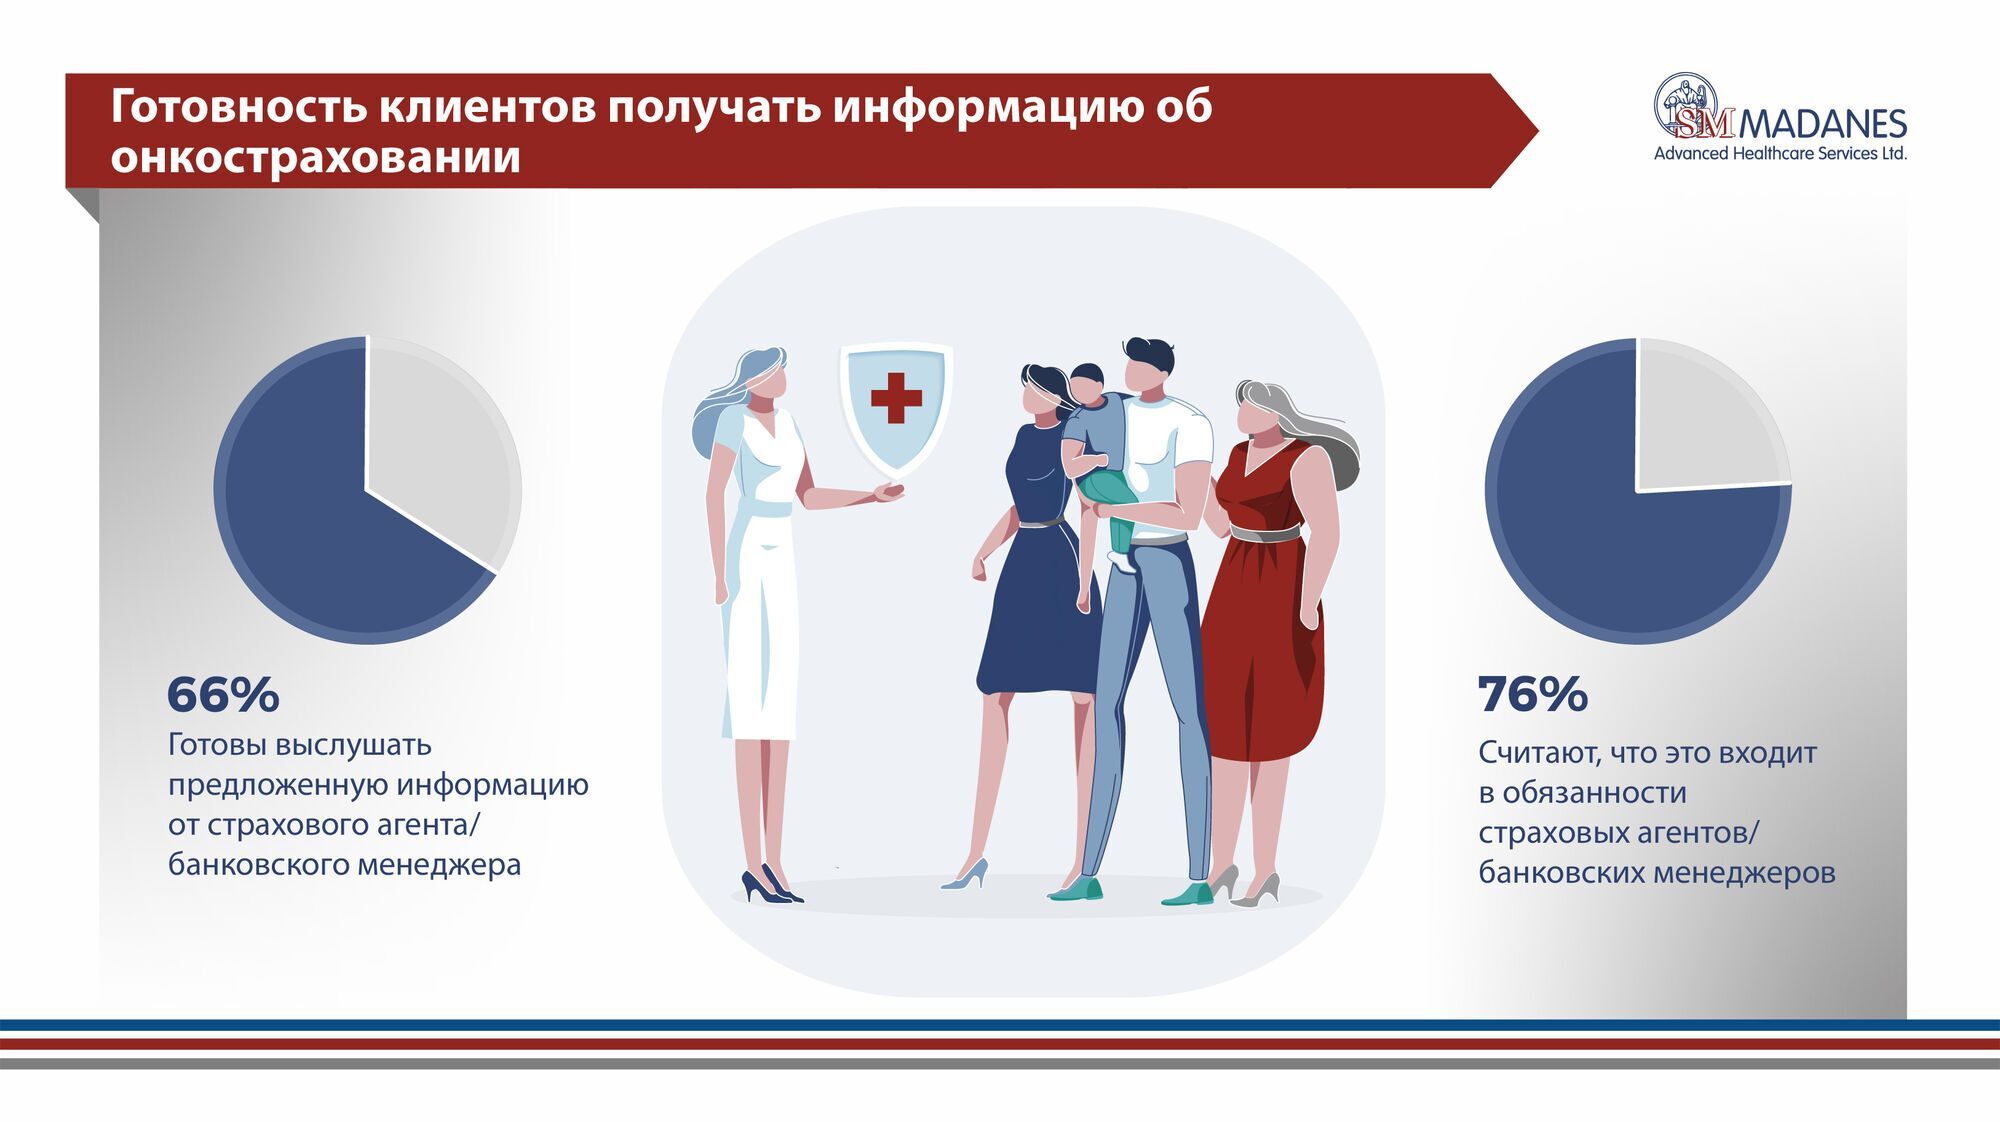 Украинцы не готовы покупать страховку от онкозаболеваний из-за нехватки информации